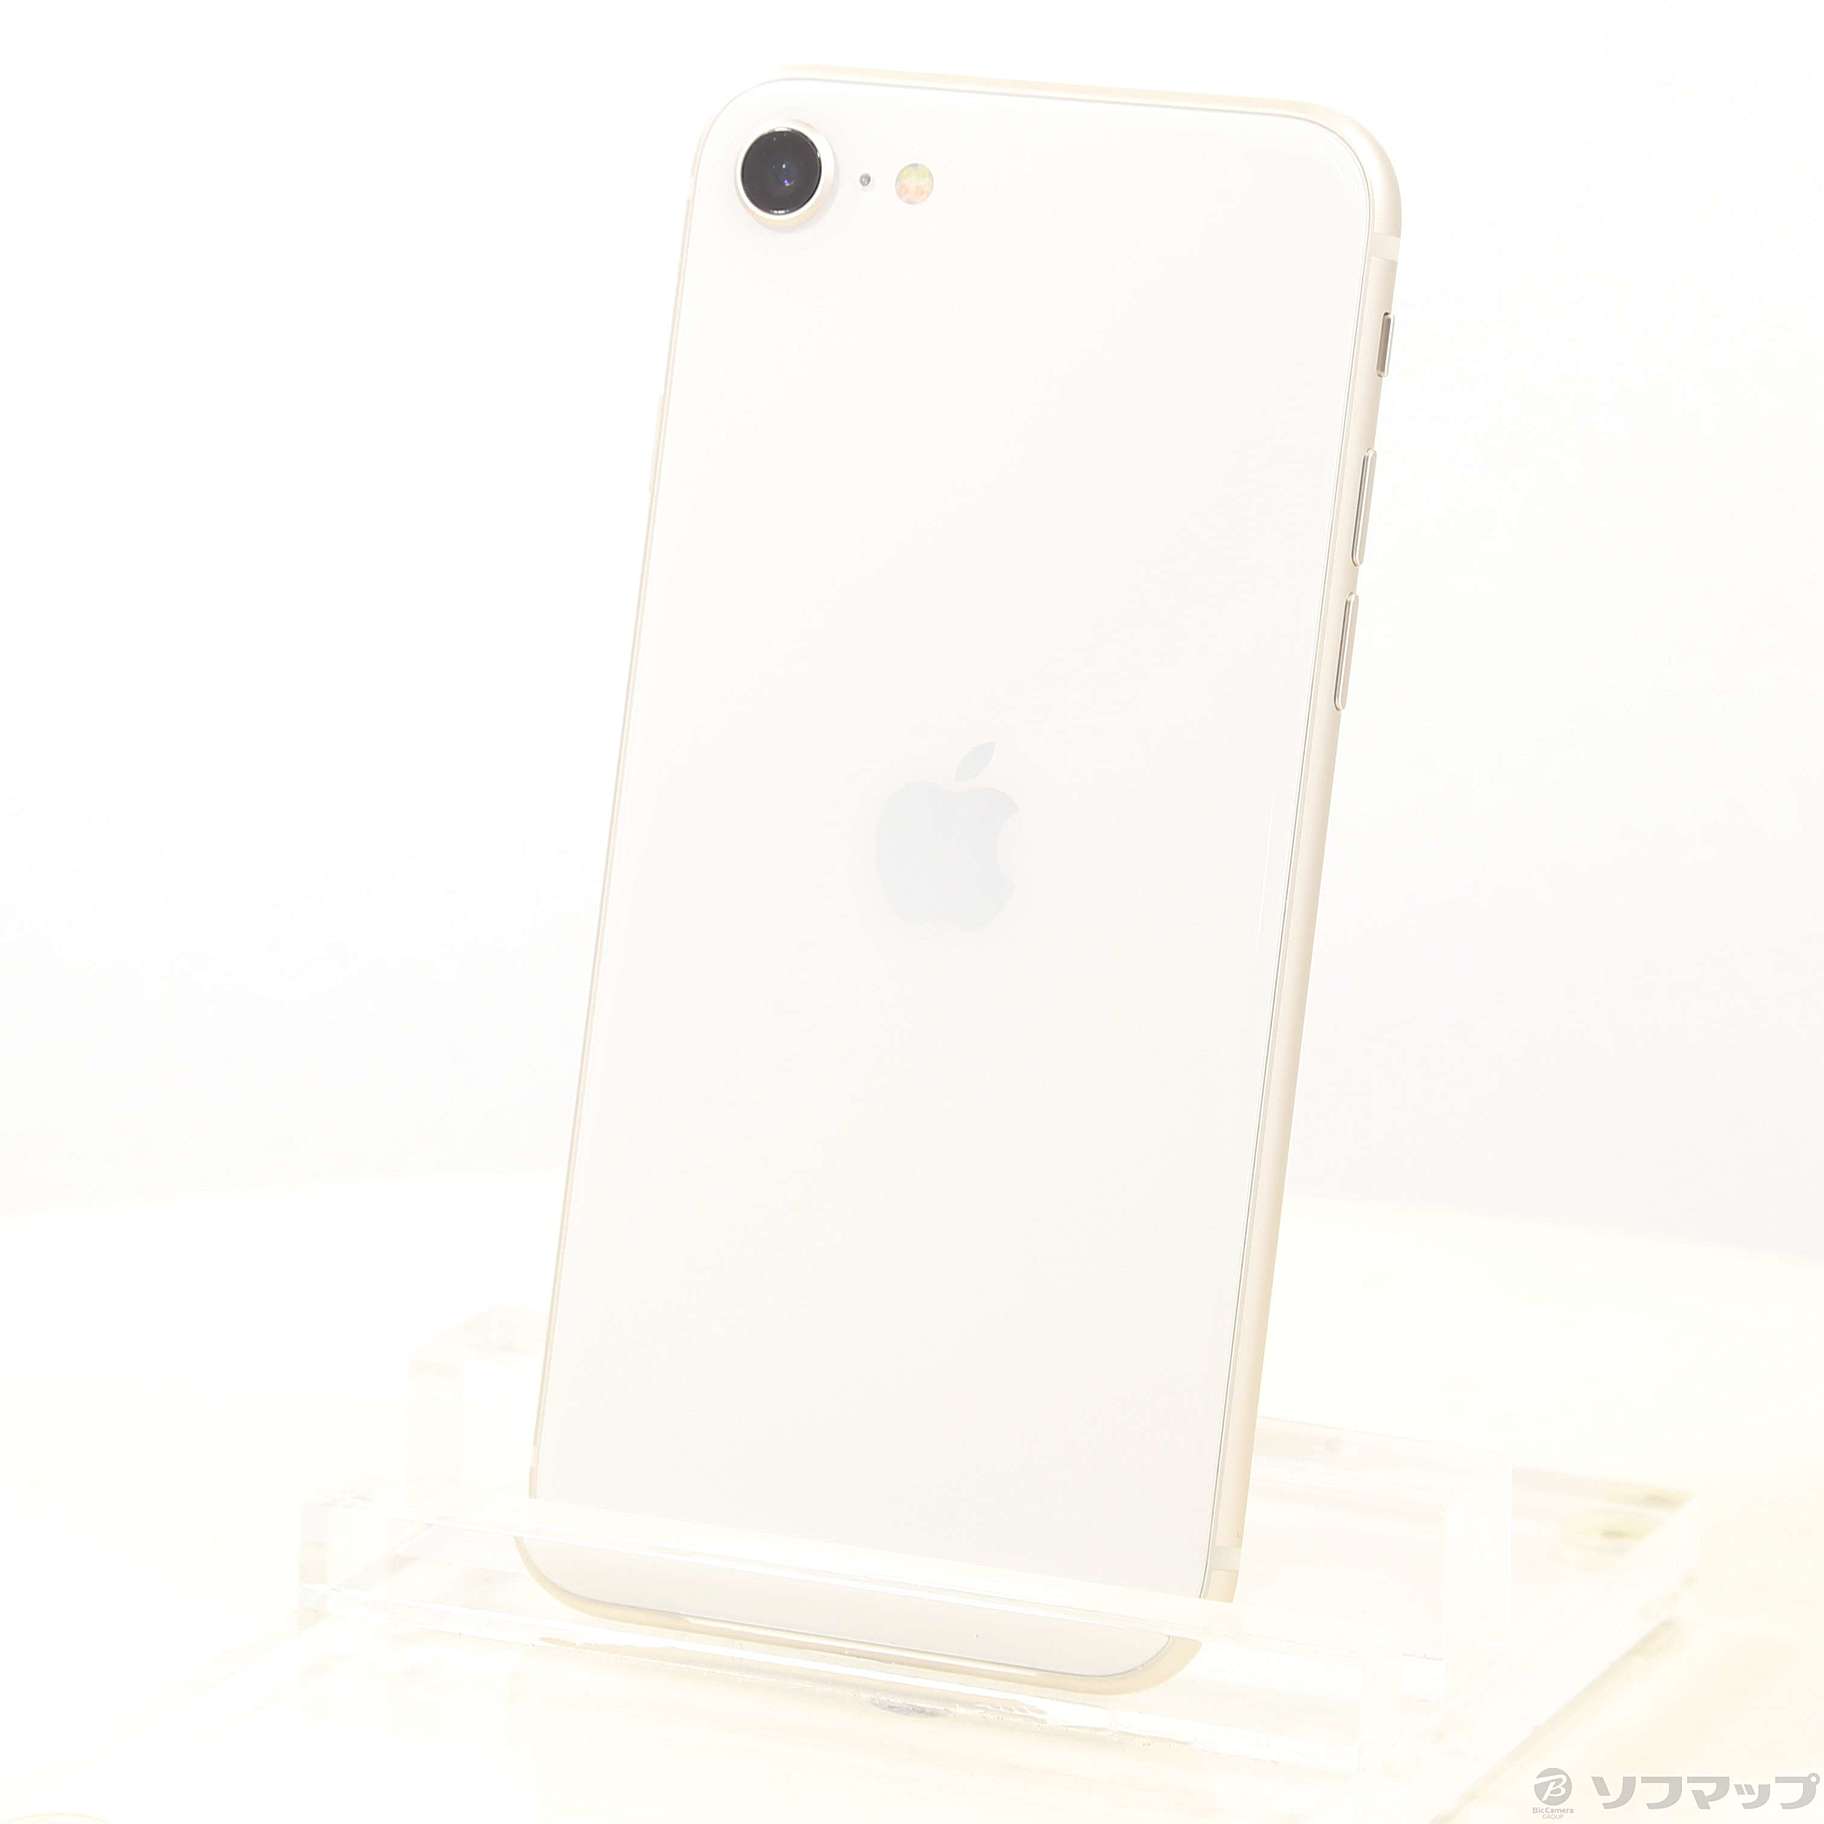 【新品】iPhoneSE 第3世代 ホワイト Starlight 128GB